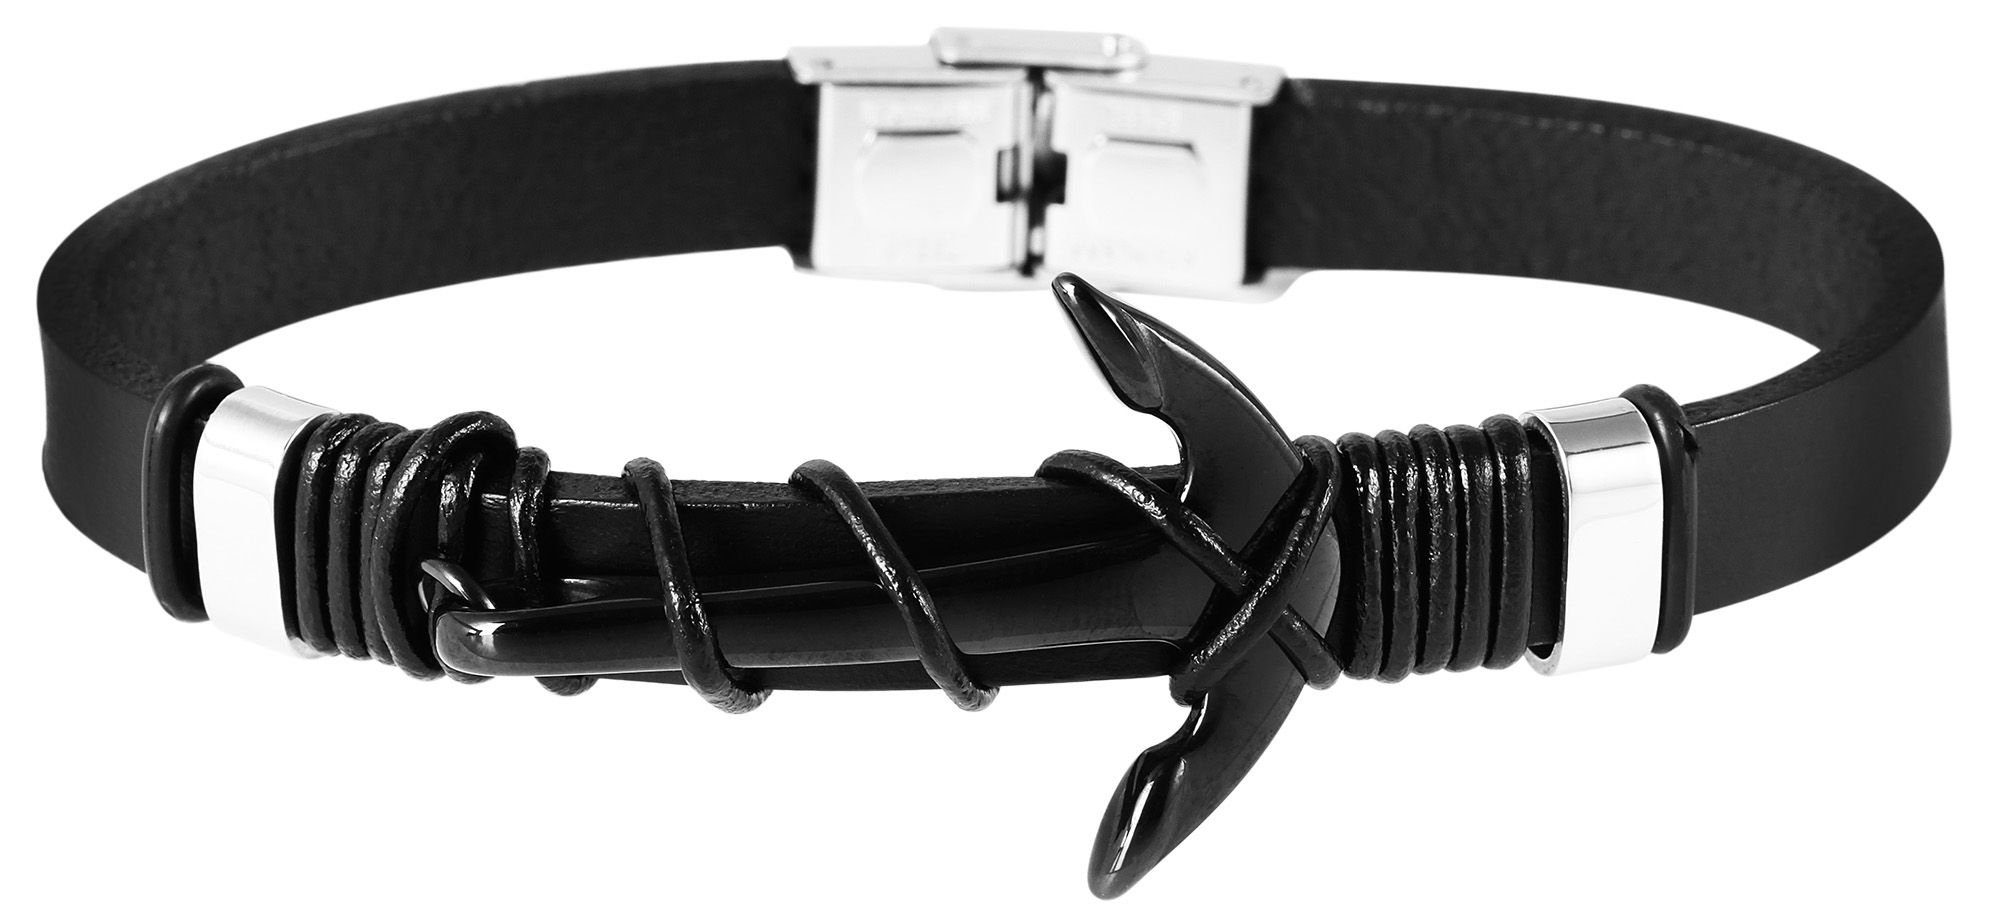 AKZENT Lederarmband Finjan Armband aus Echtleder mit Edelstahlelement Anker (einzeln) Schwarz